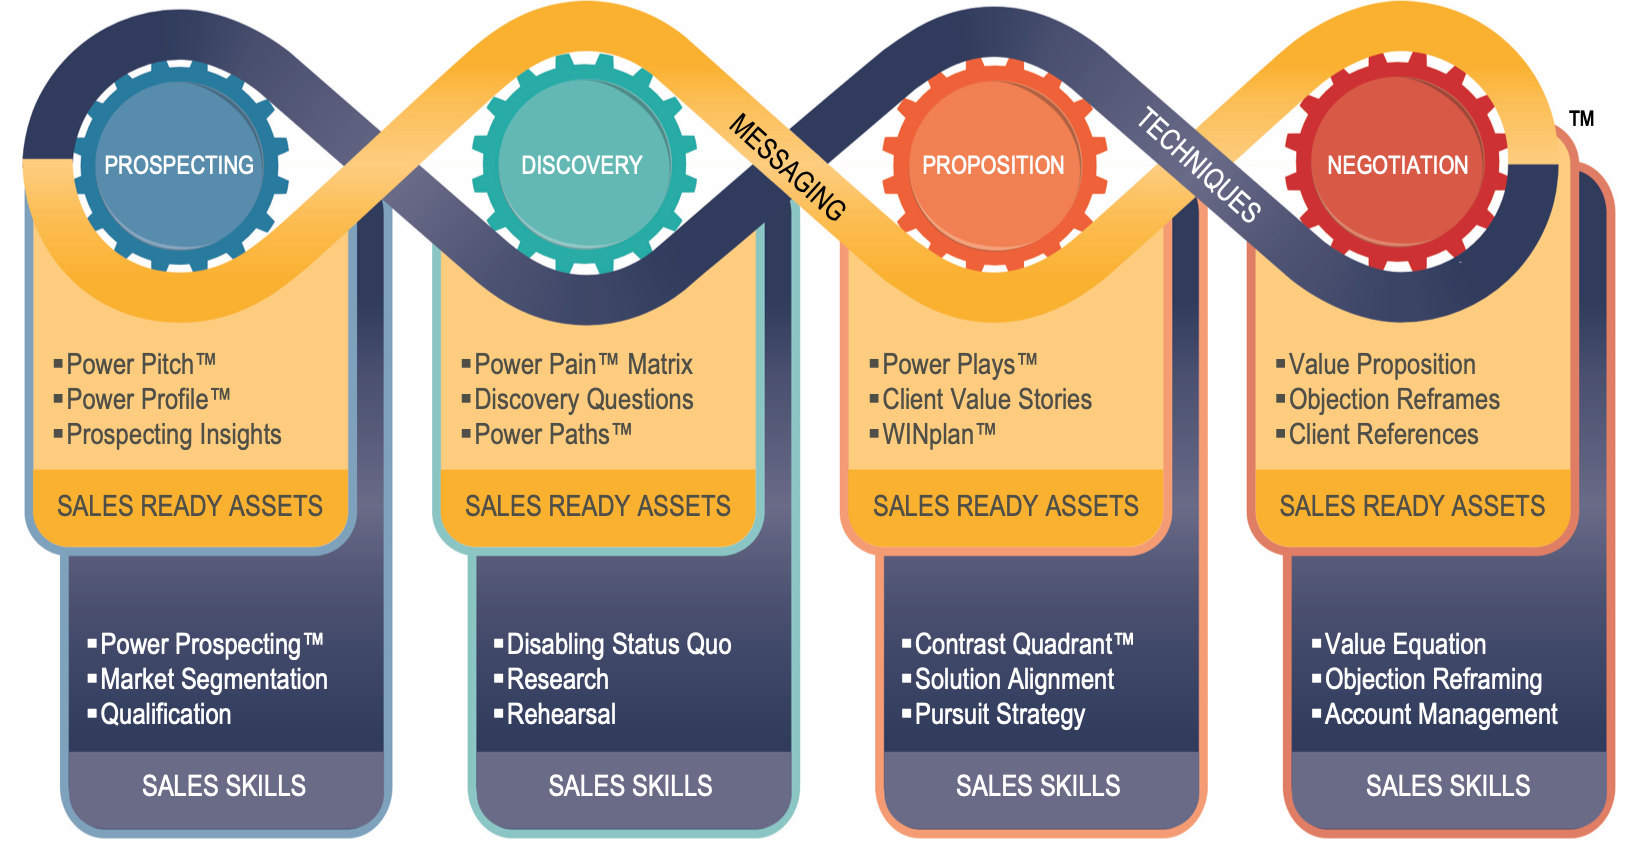 sales enablement best practices